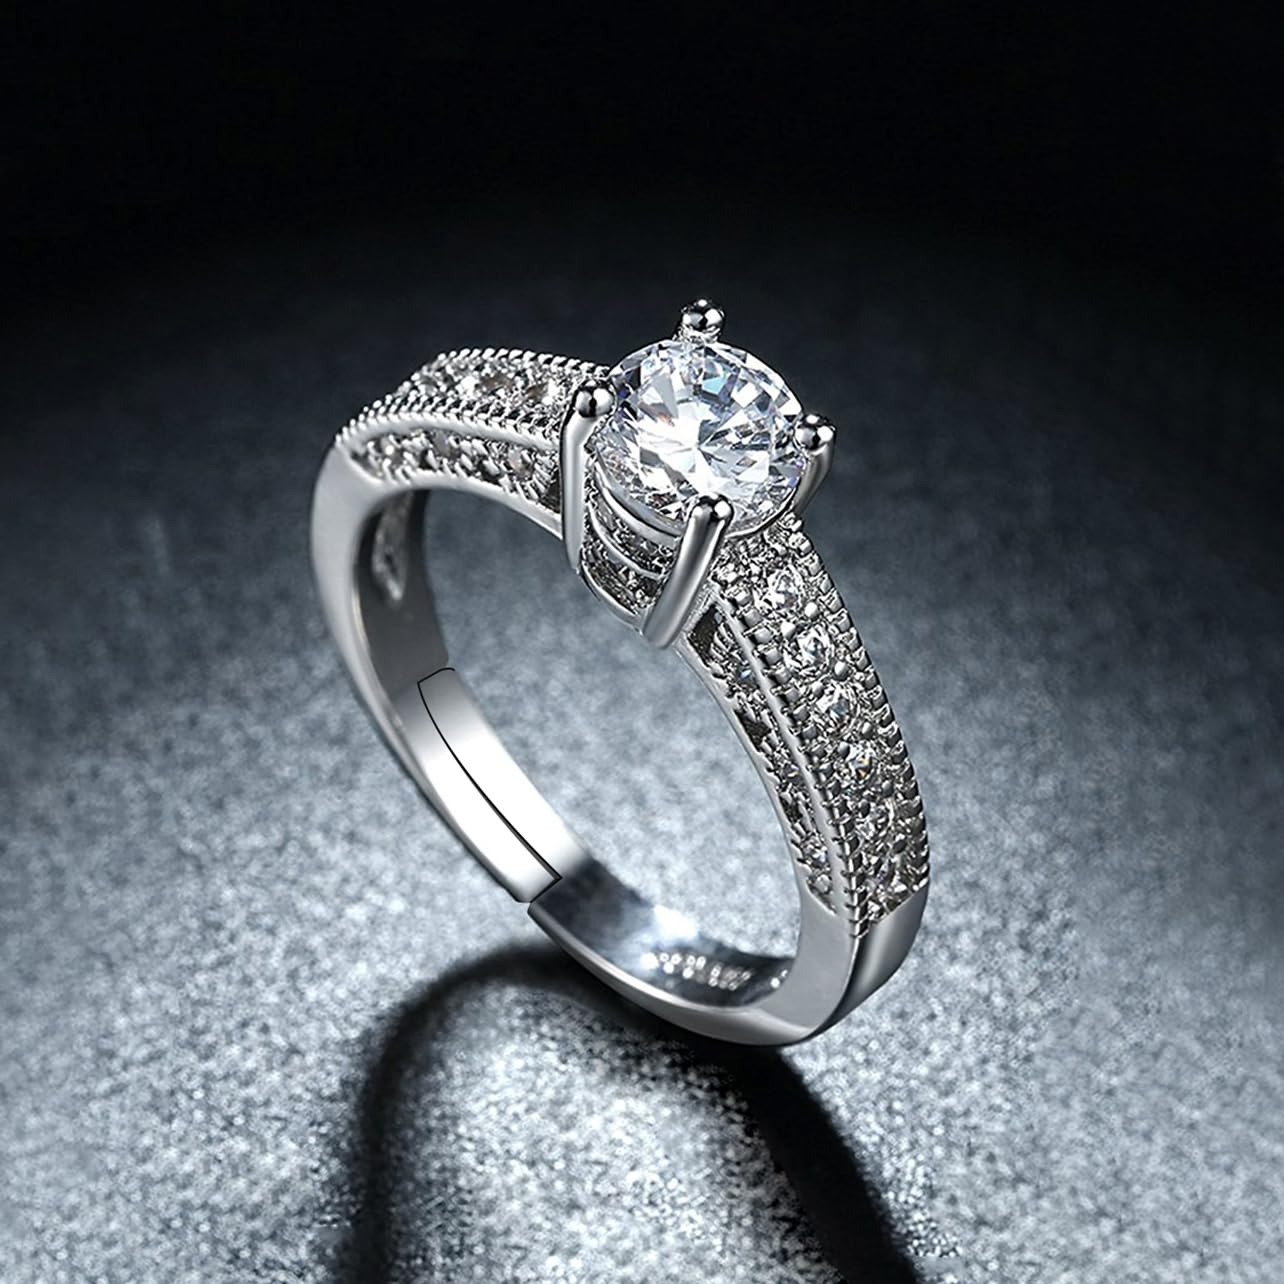 Glowies Glow Jewelry Art & Decor - Aurora Borealis Genuine Swarovski  Crystal Ring